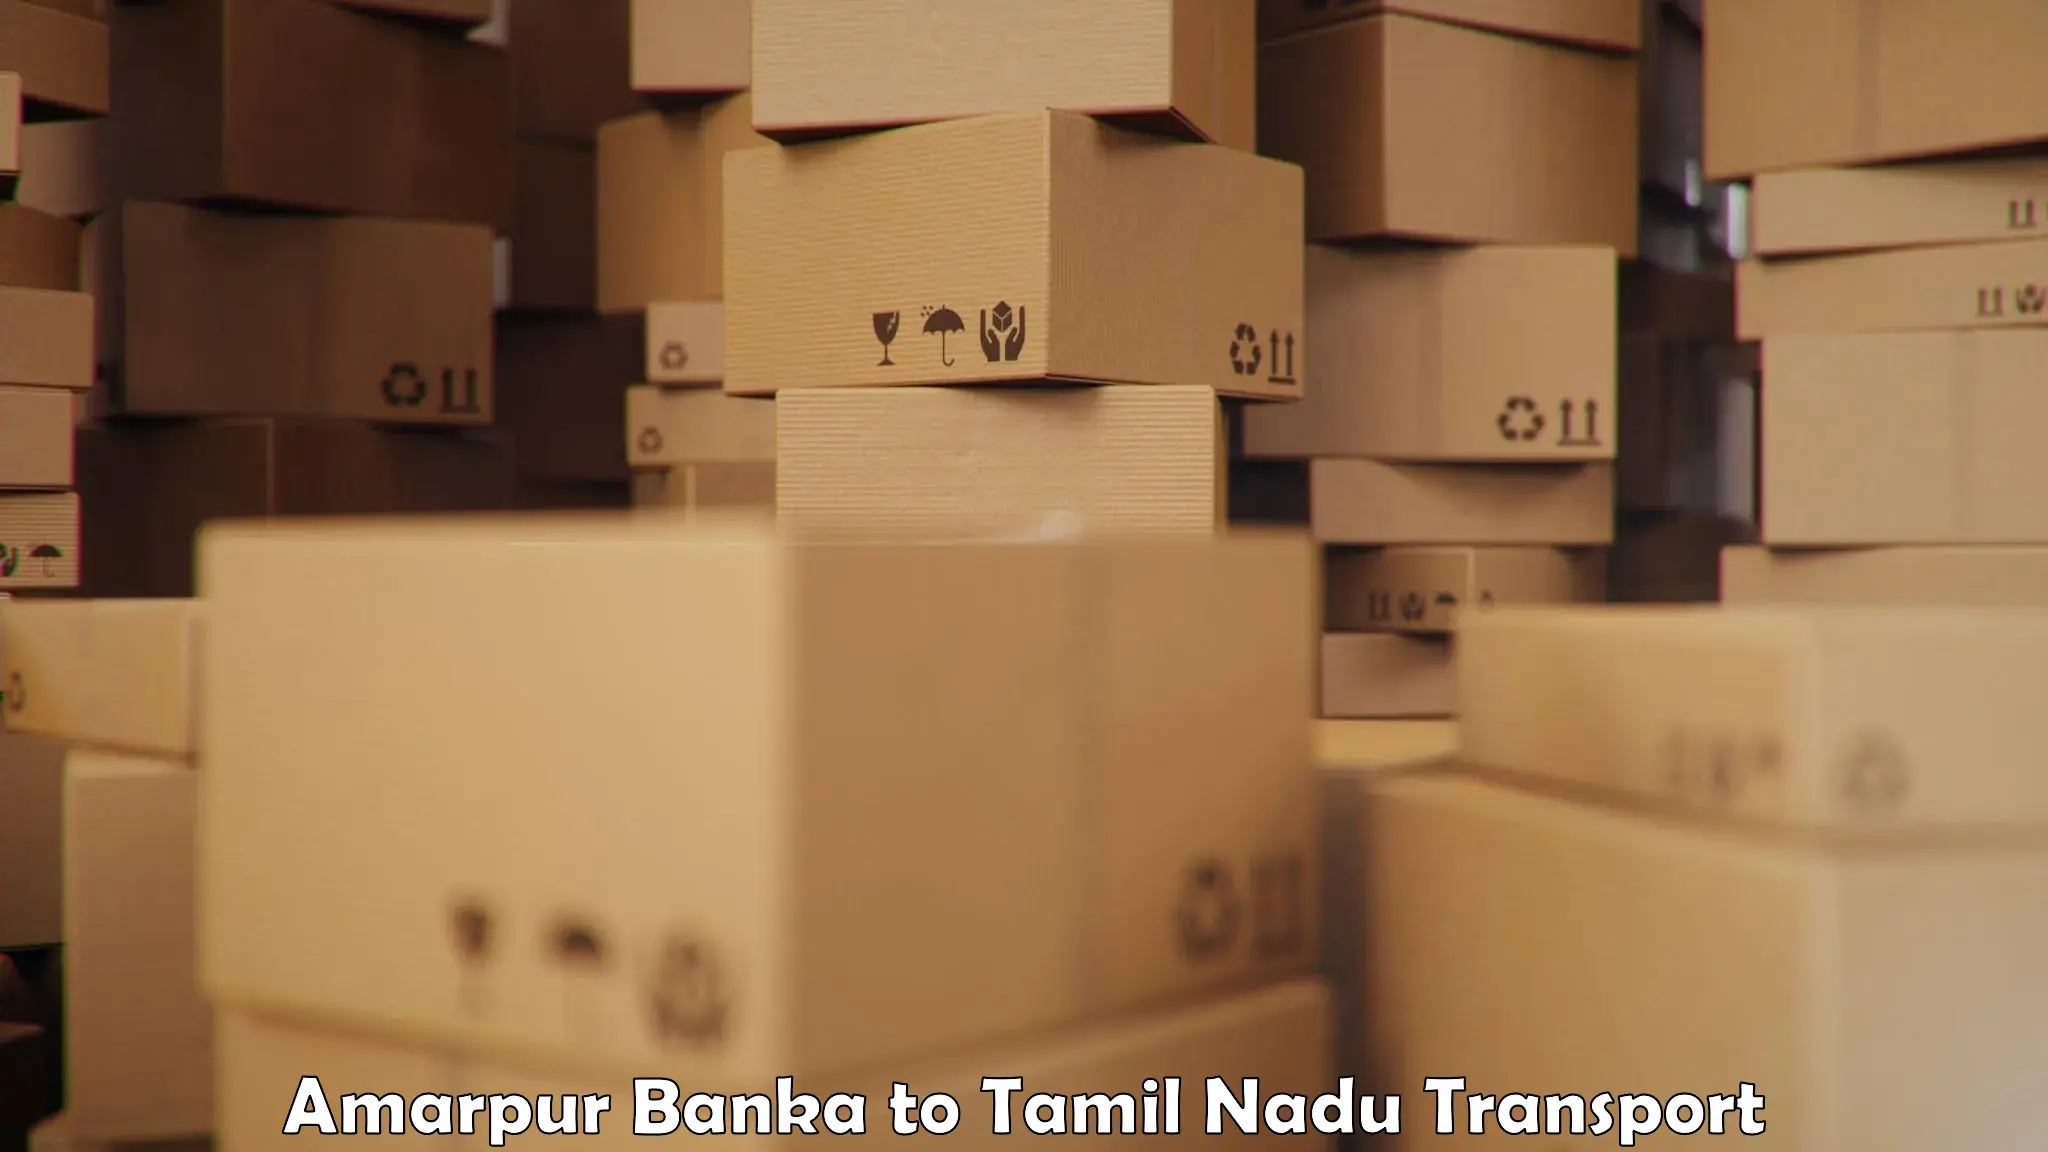 Road transport online services Amarpur Banka to Tamil Nadu